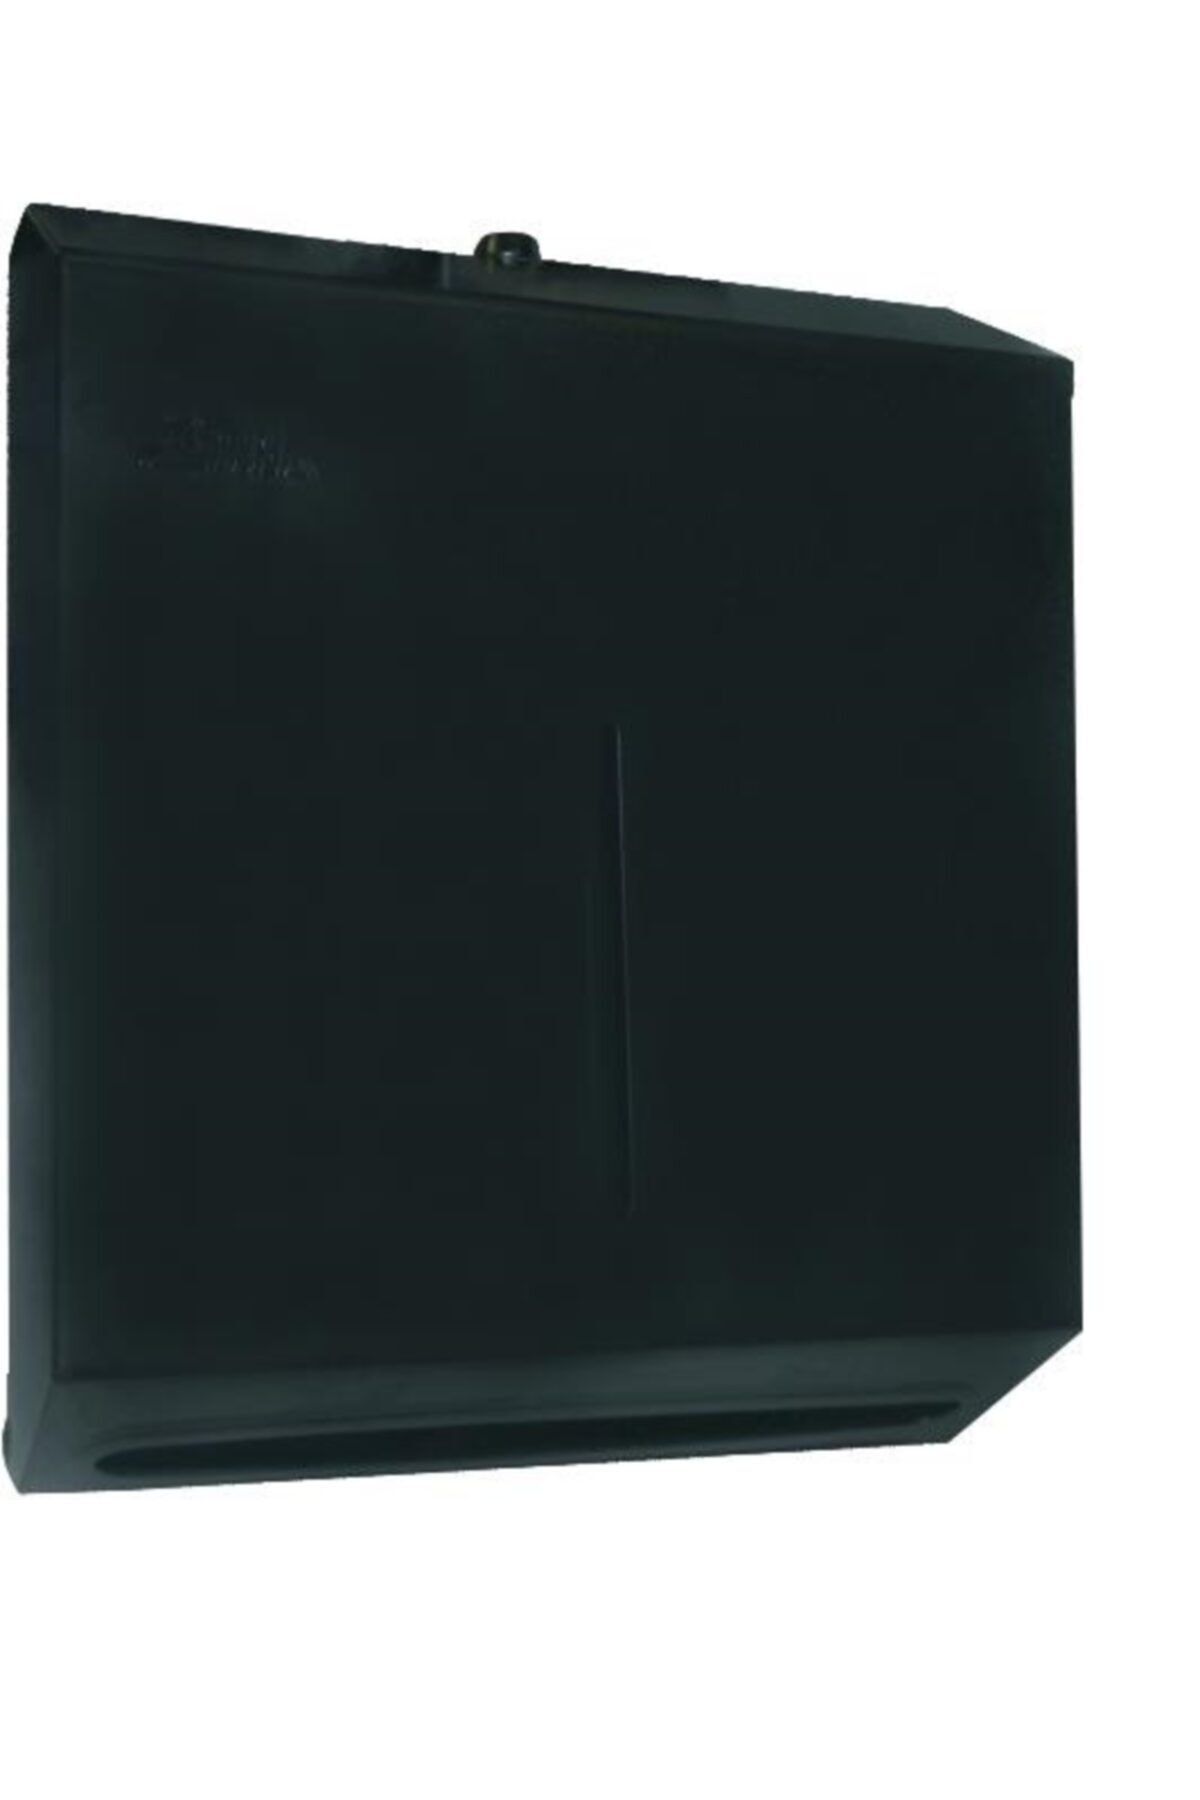 Arı Metal Katlama Kağıt Havlu Dispenseri 400' Lü Siyah 7659-s Z